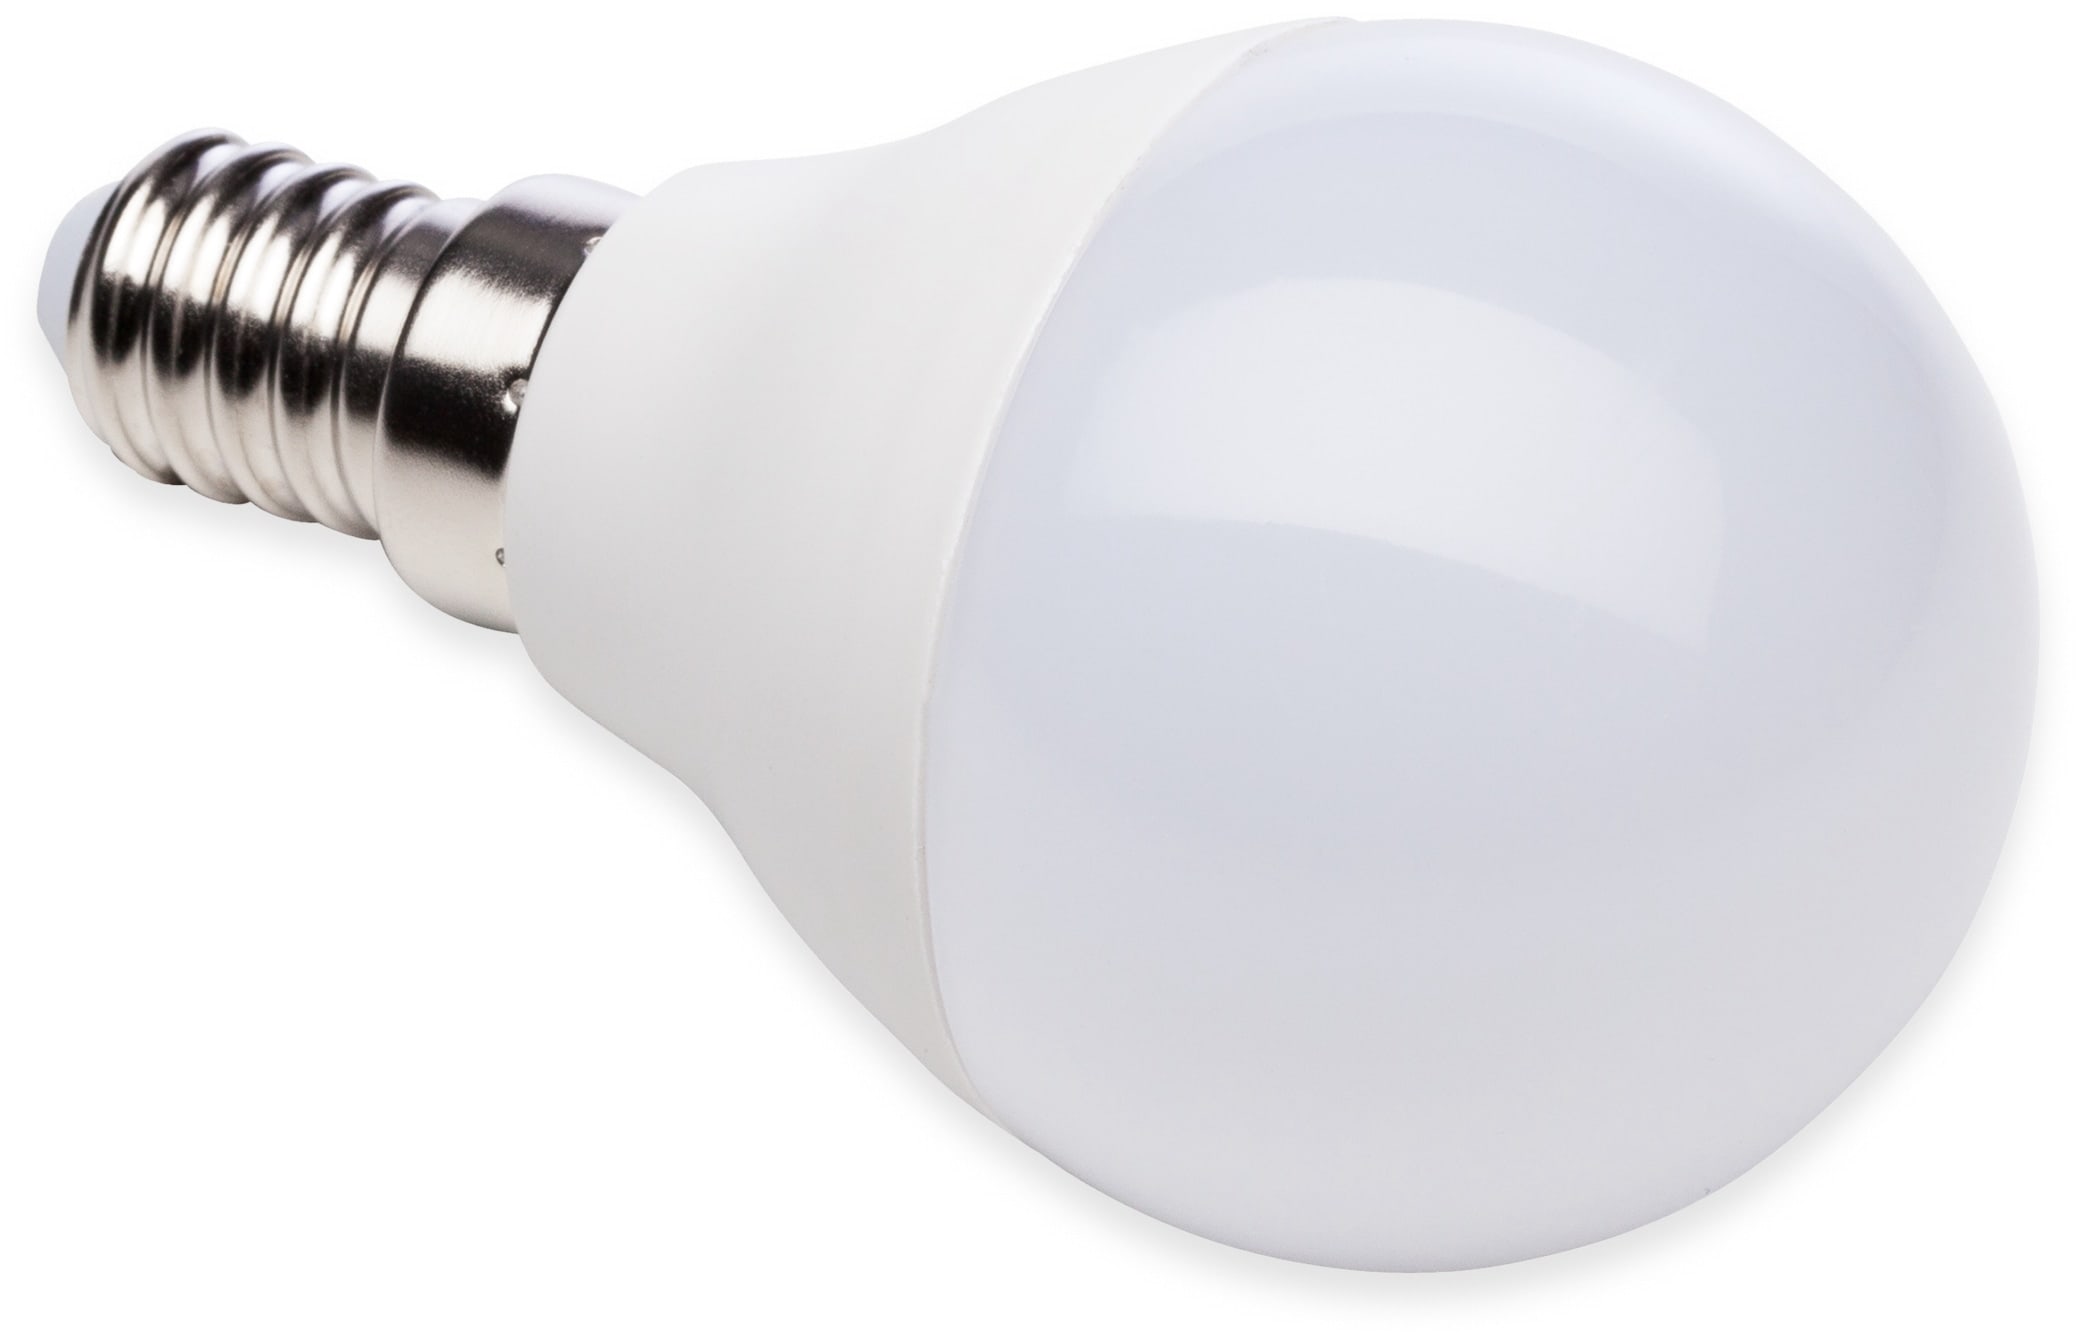 MÜLLER-LICHT LED-Lampe, Tropfenform, 400359, E14, 5,5W, 4000K, matt